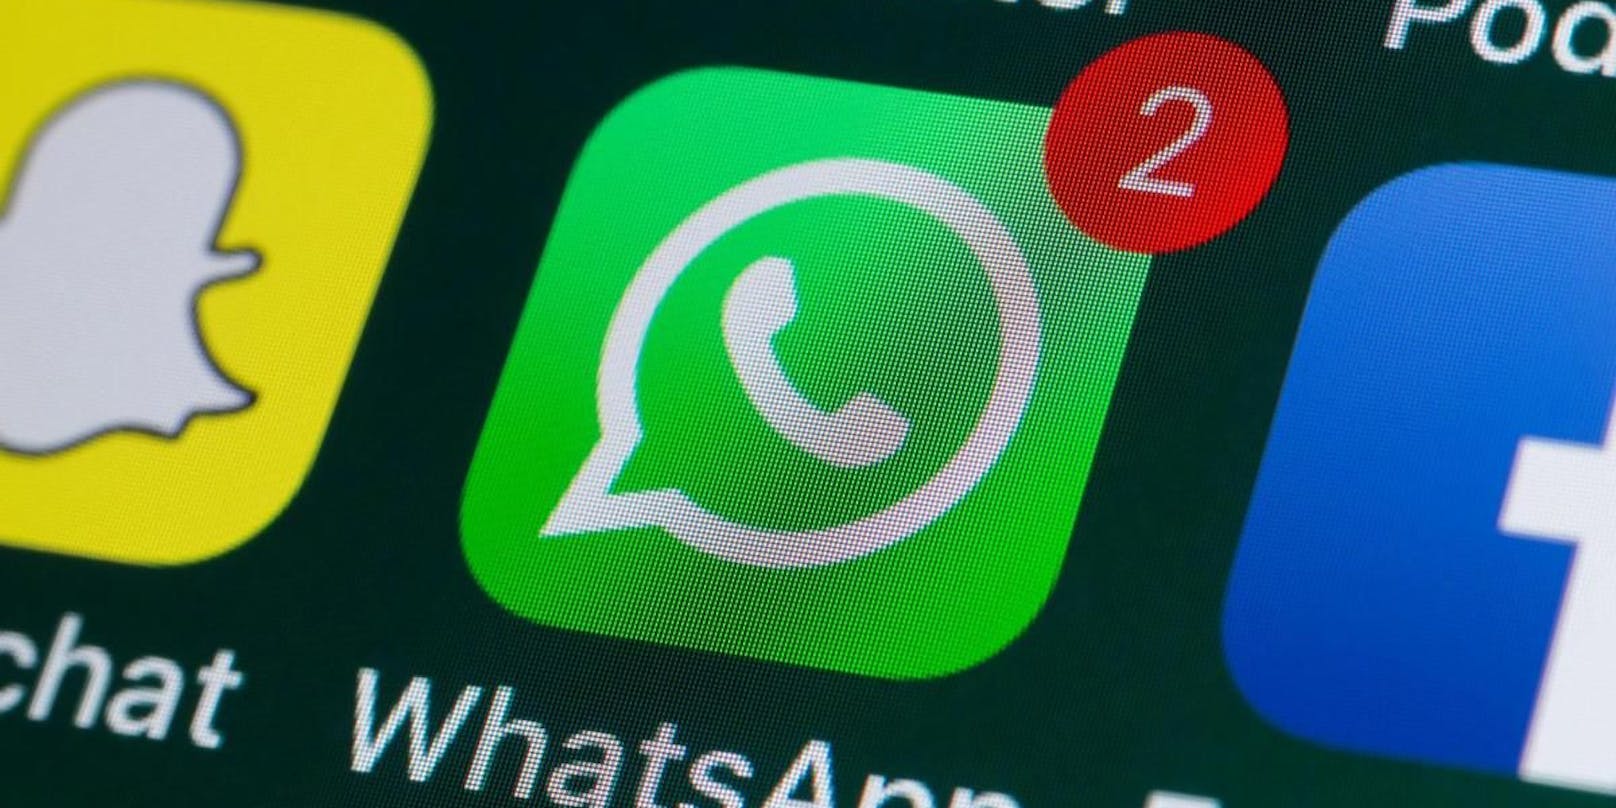 WhatsApp hat große Änderungen angekündigt, was die Messaging-App angeht.